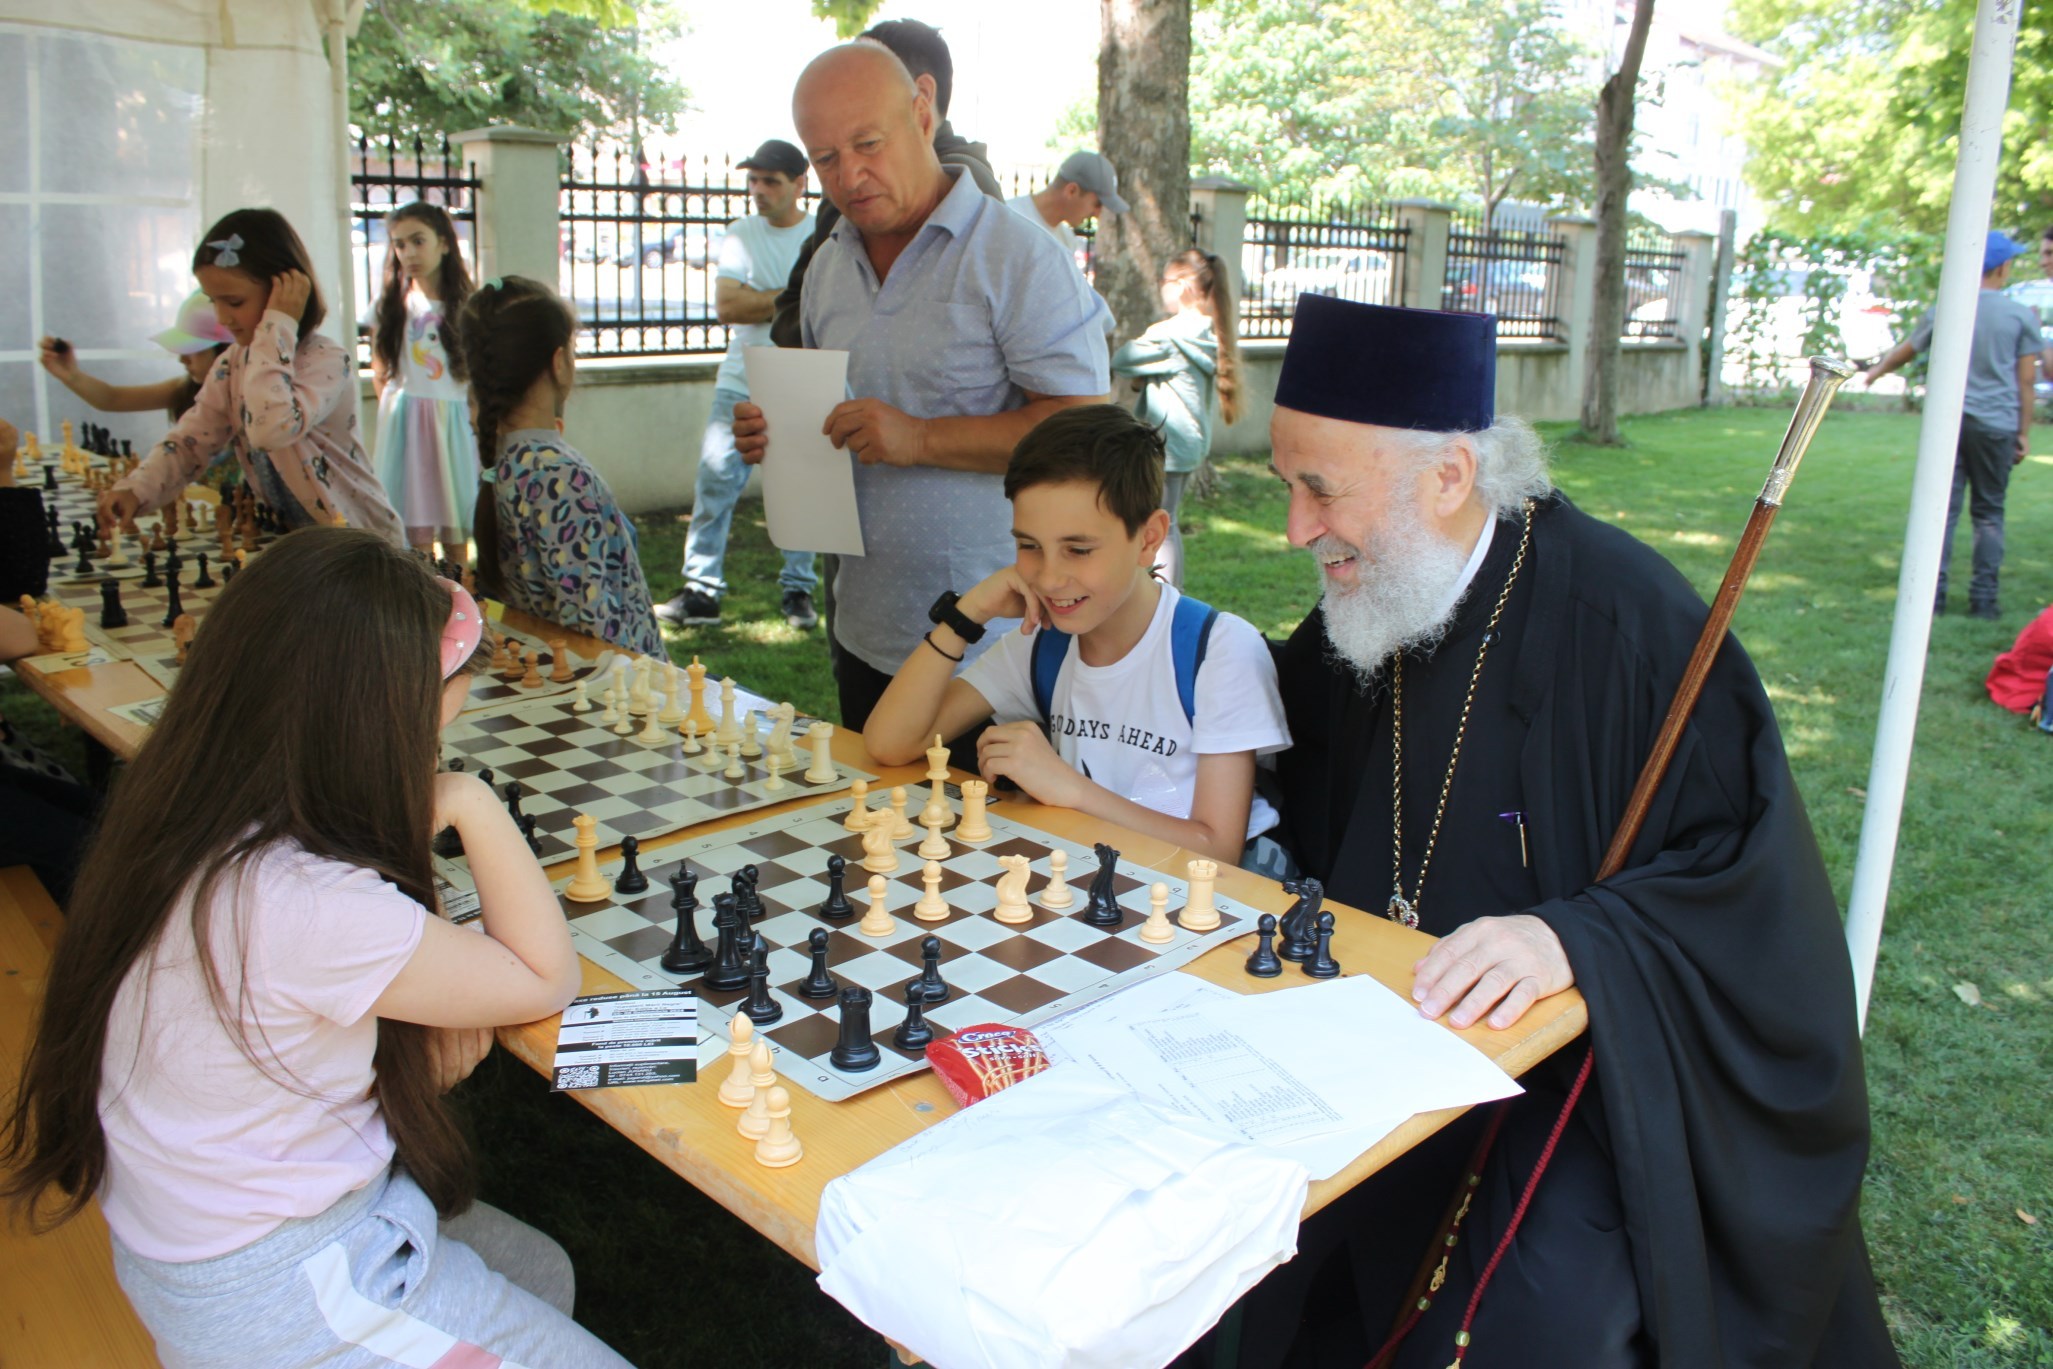 Şah-mat! ÎPS Casian, la unul dintre cele mai mari concursuri de şah în aer liber din România (FOTO)